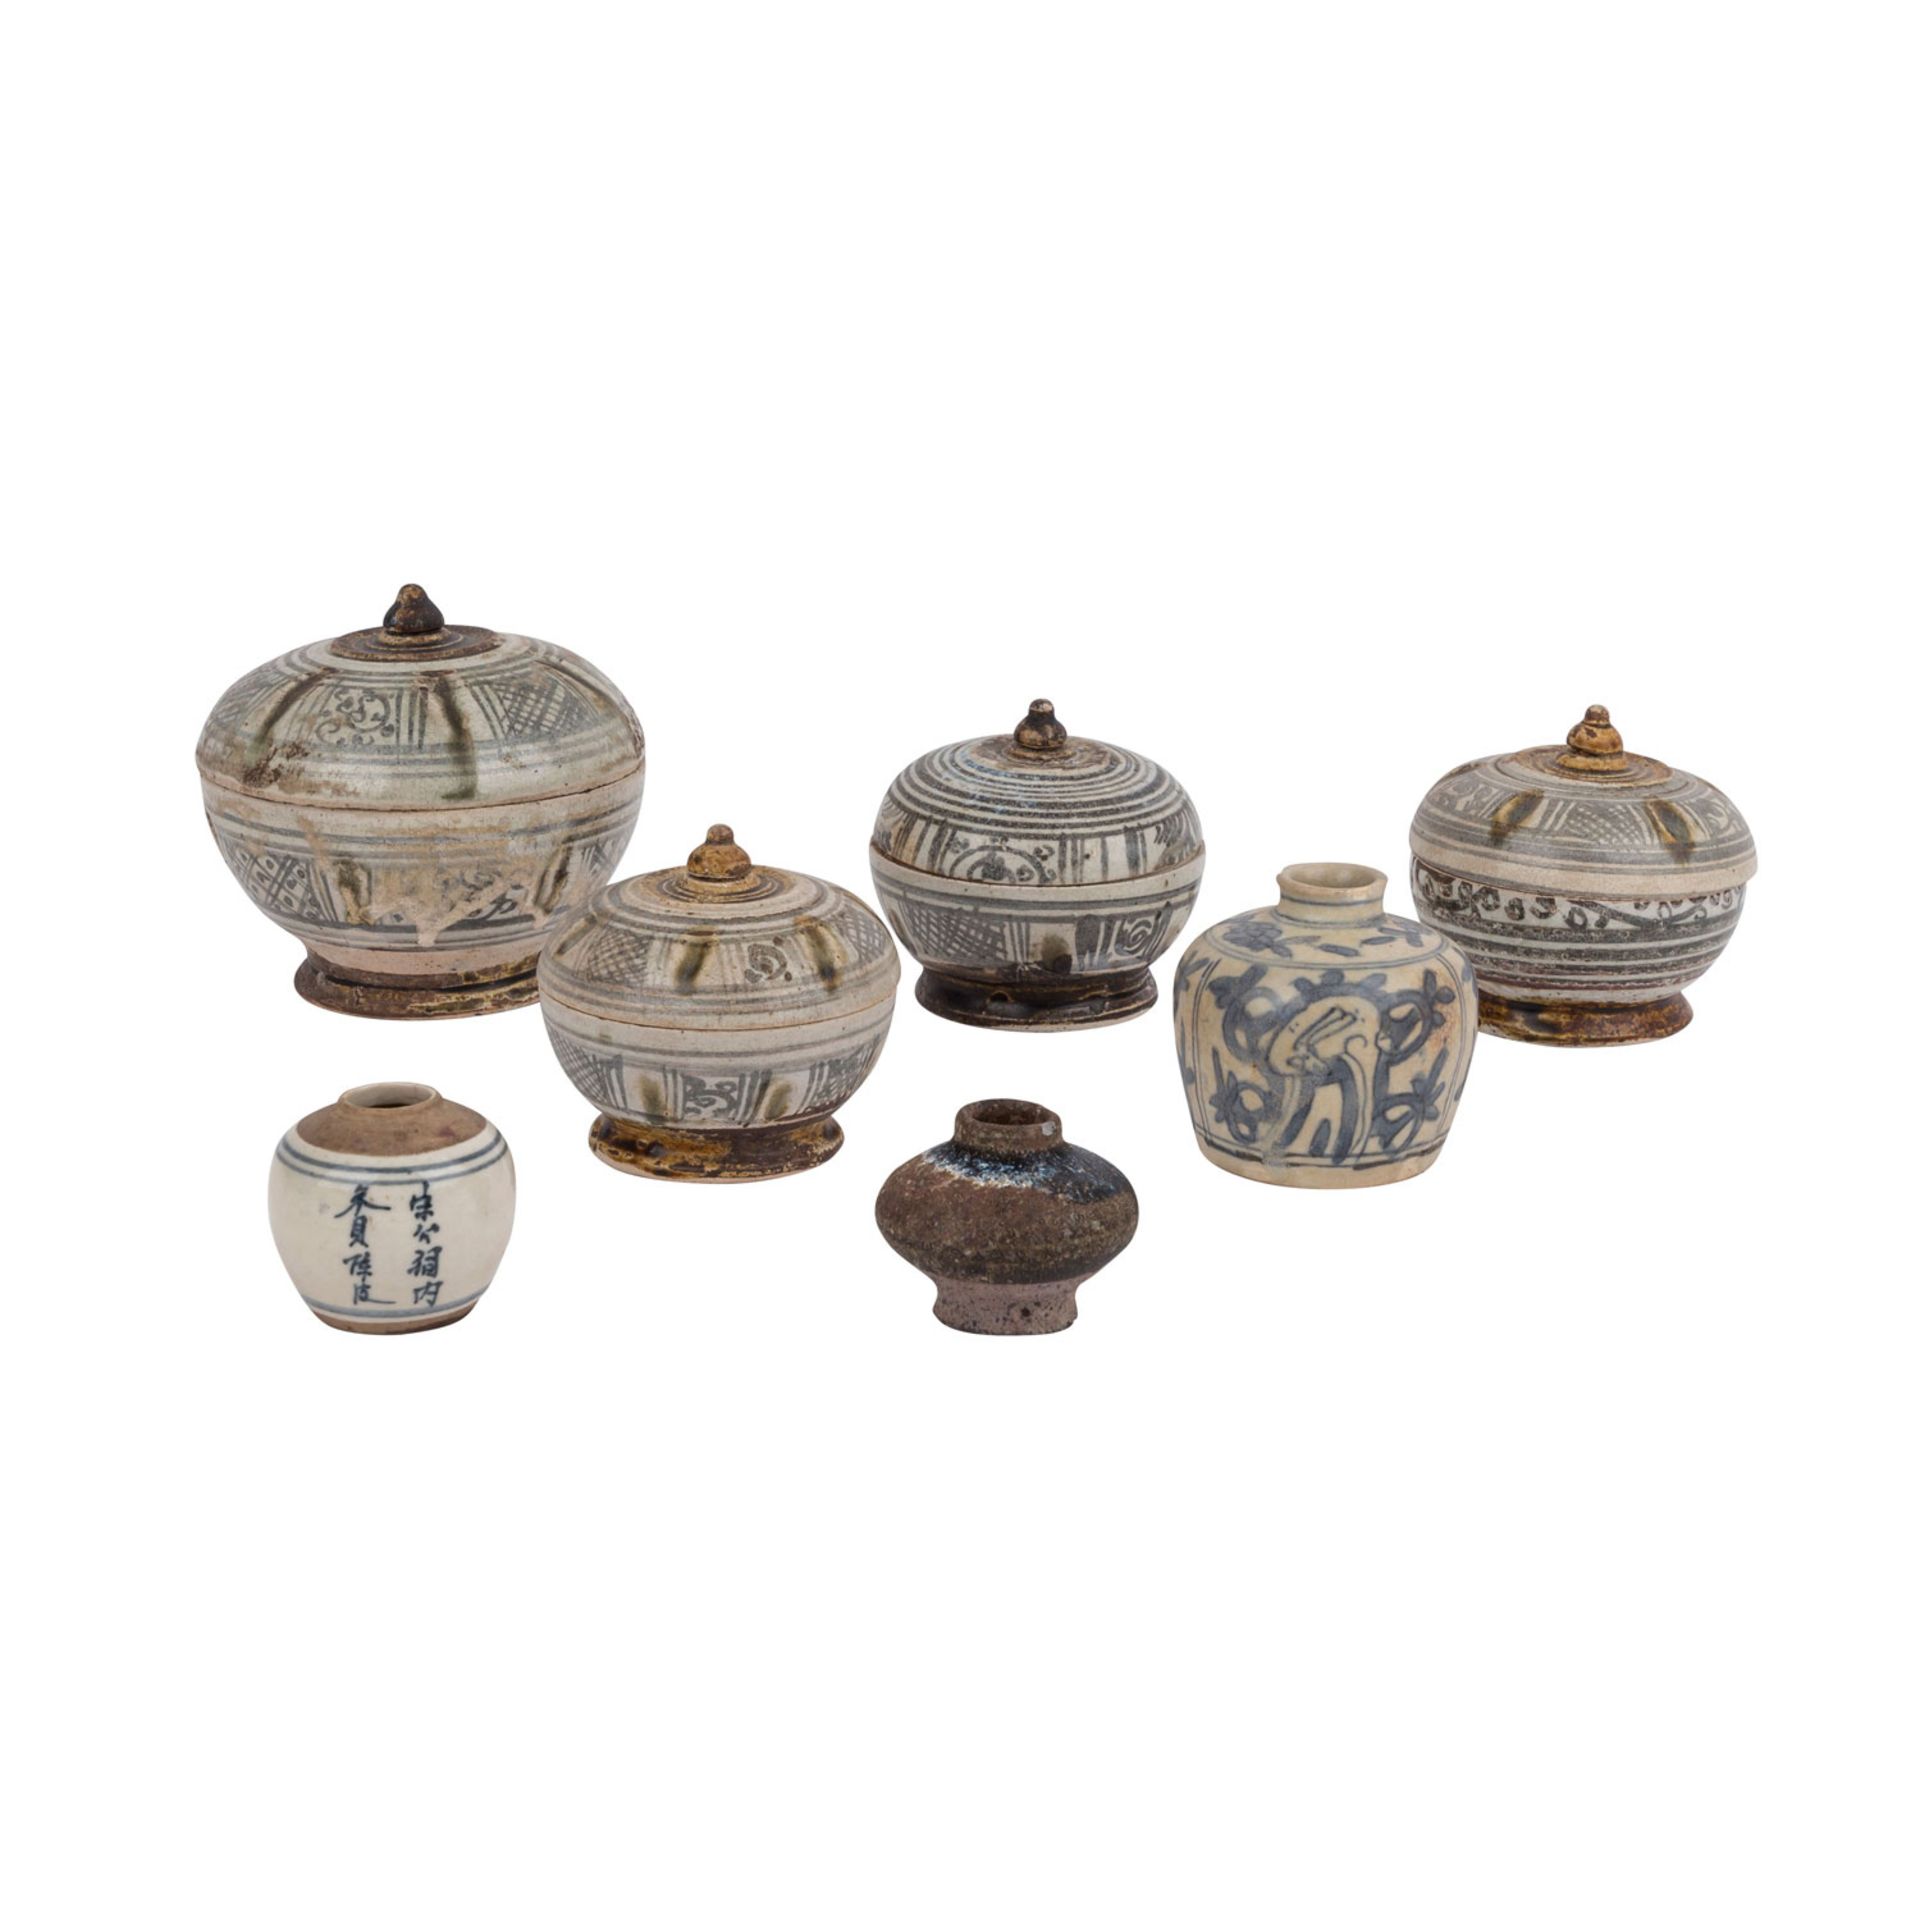 Konvolut: 7 Keramik-Gefäße.: ASIEN/PERSIEN.4 Deckeldosen, D: 9-13 cm; 3 Gefäße, H: 5-8 cm. Alters-